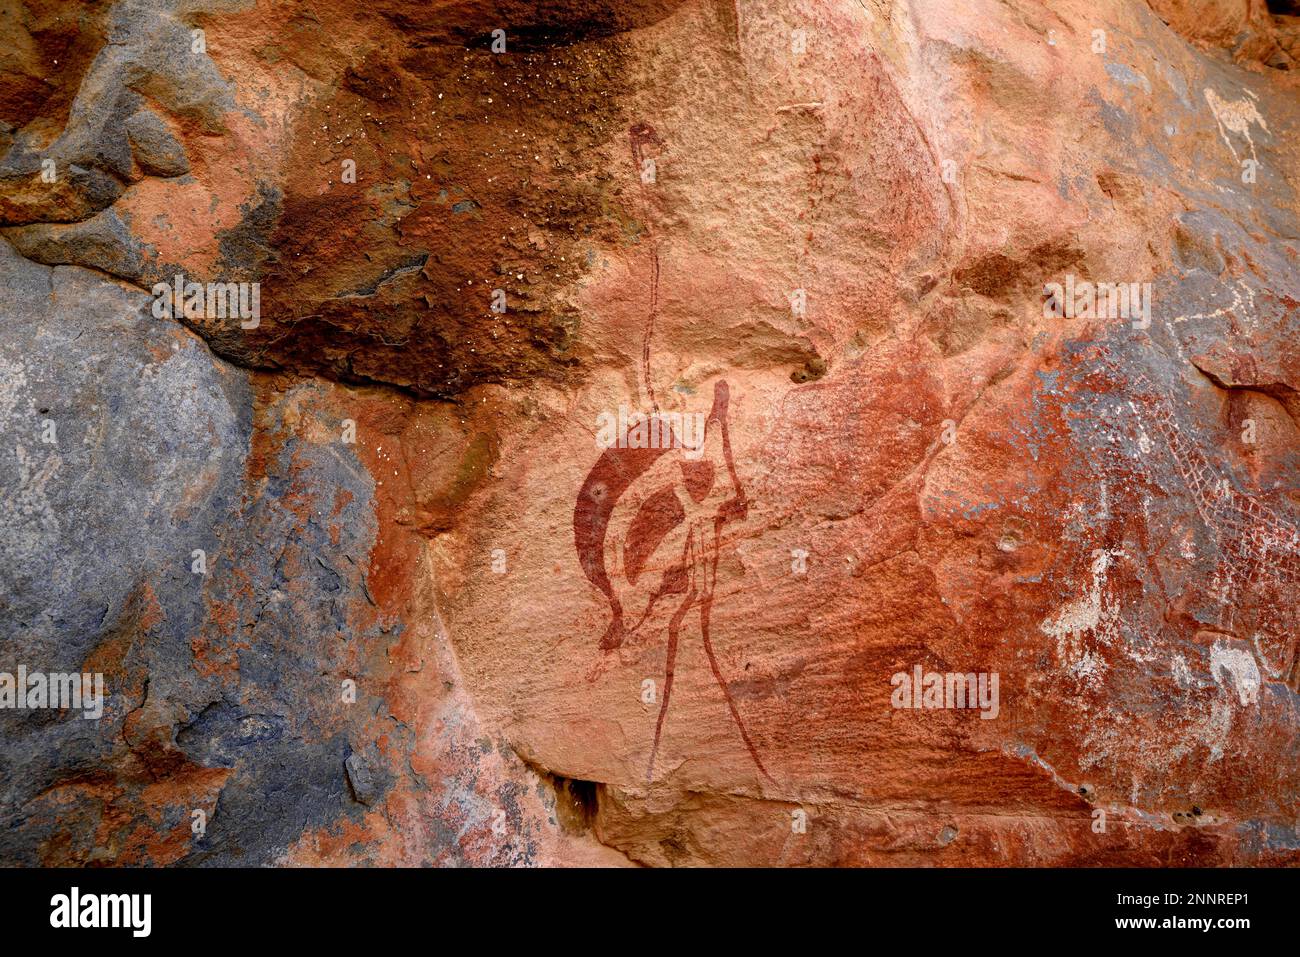 Dessin de roche d'un autruche dans la grotte de Riet, près de Riet, région de Kunene, Namibie Banque D'Images